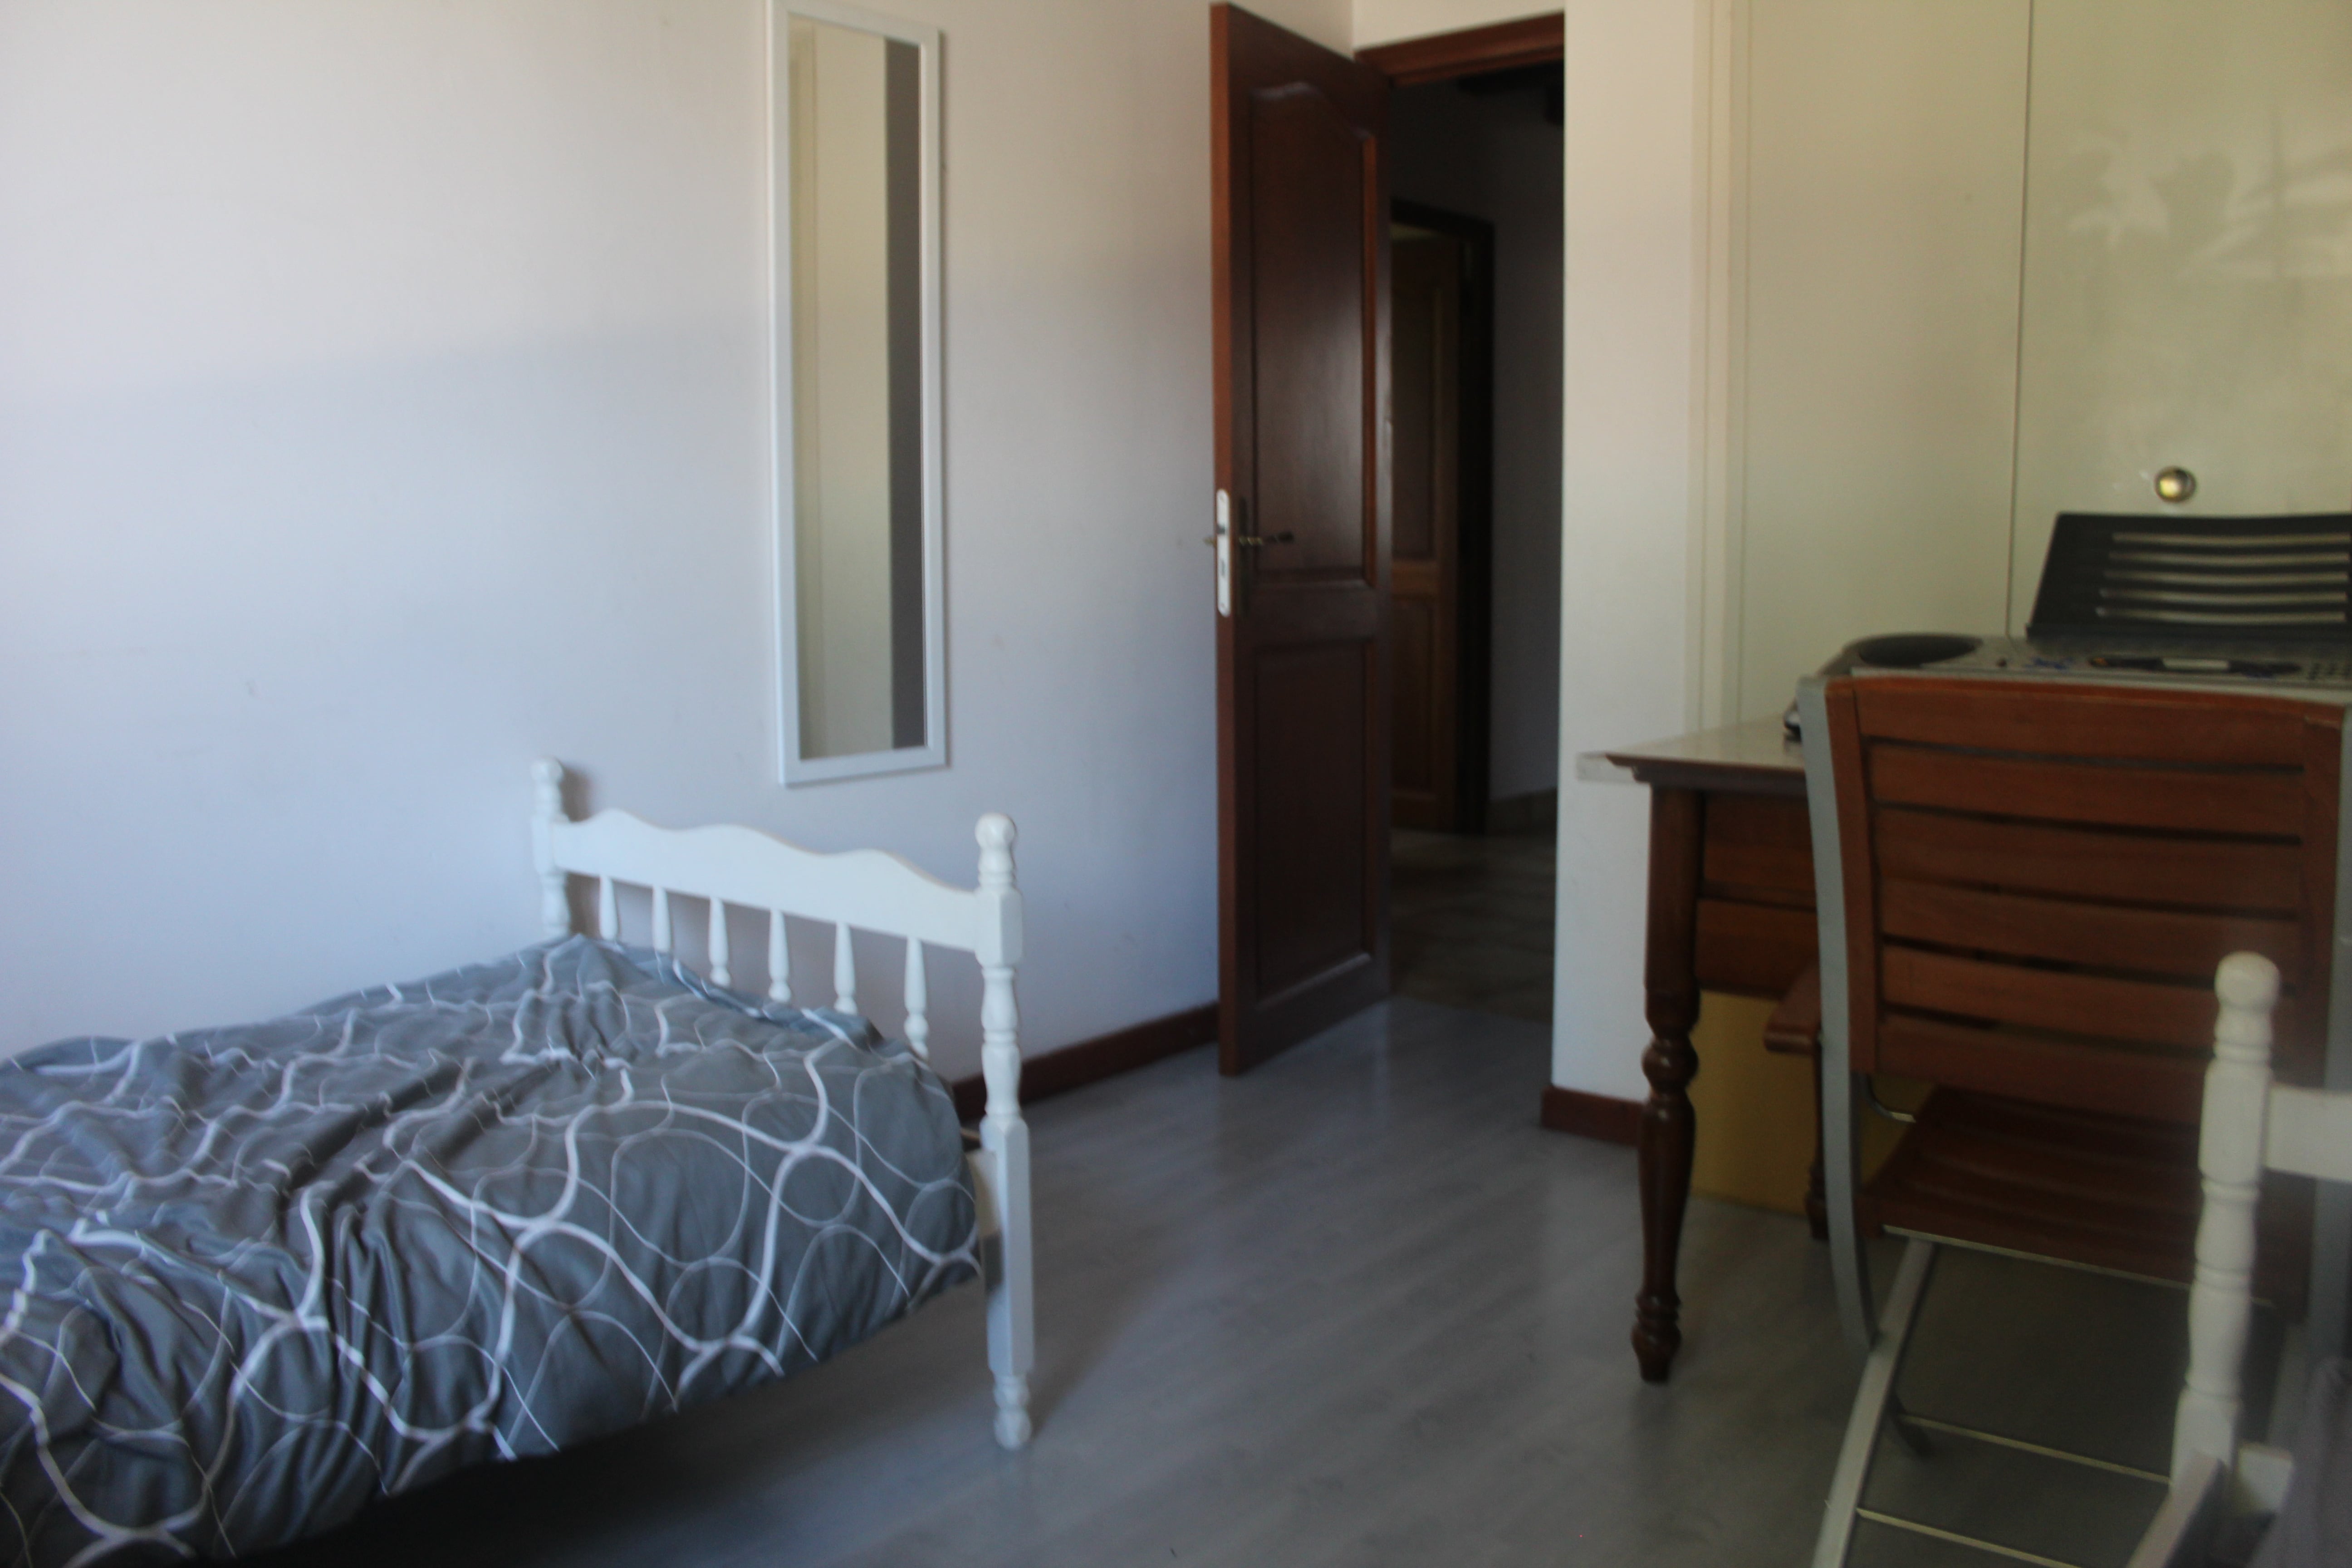 Chambre - 15 m2, 2 lits, pour chaque colocataire par lit -250 euros, ou chambre seule - 410 euros, charges comprises